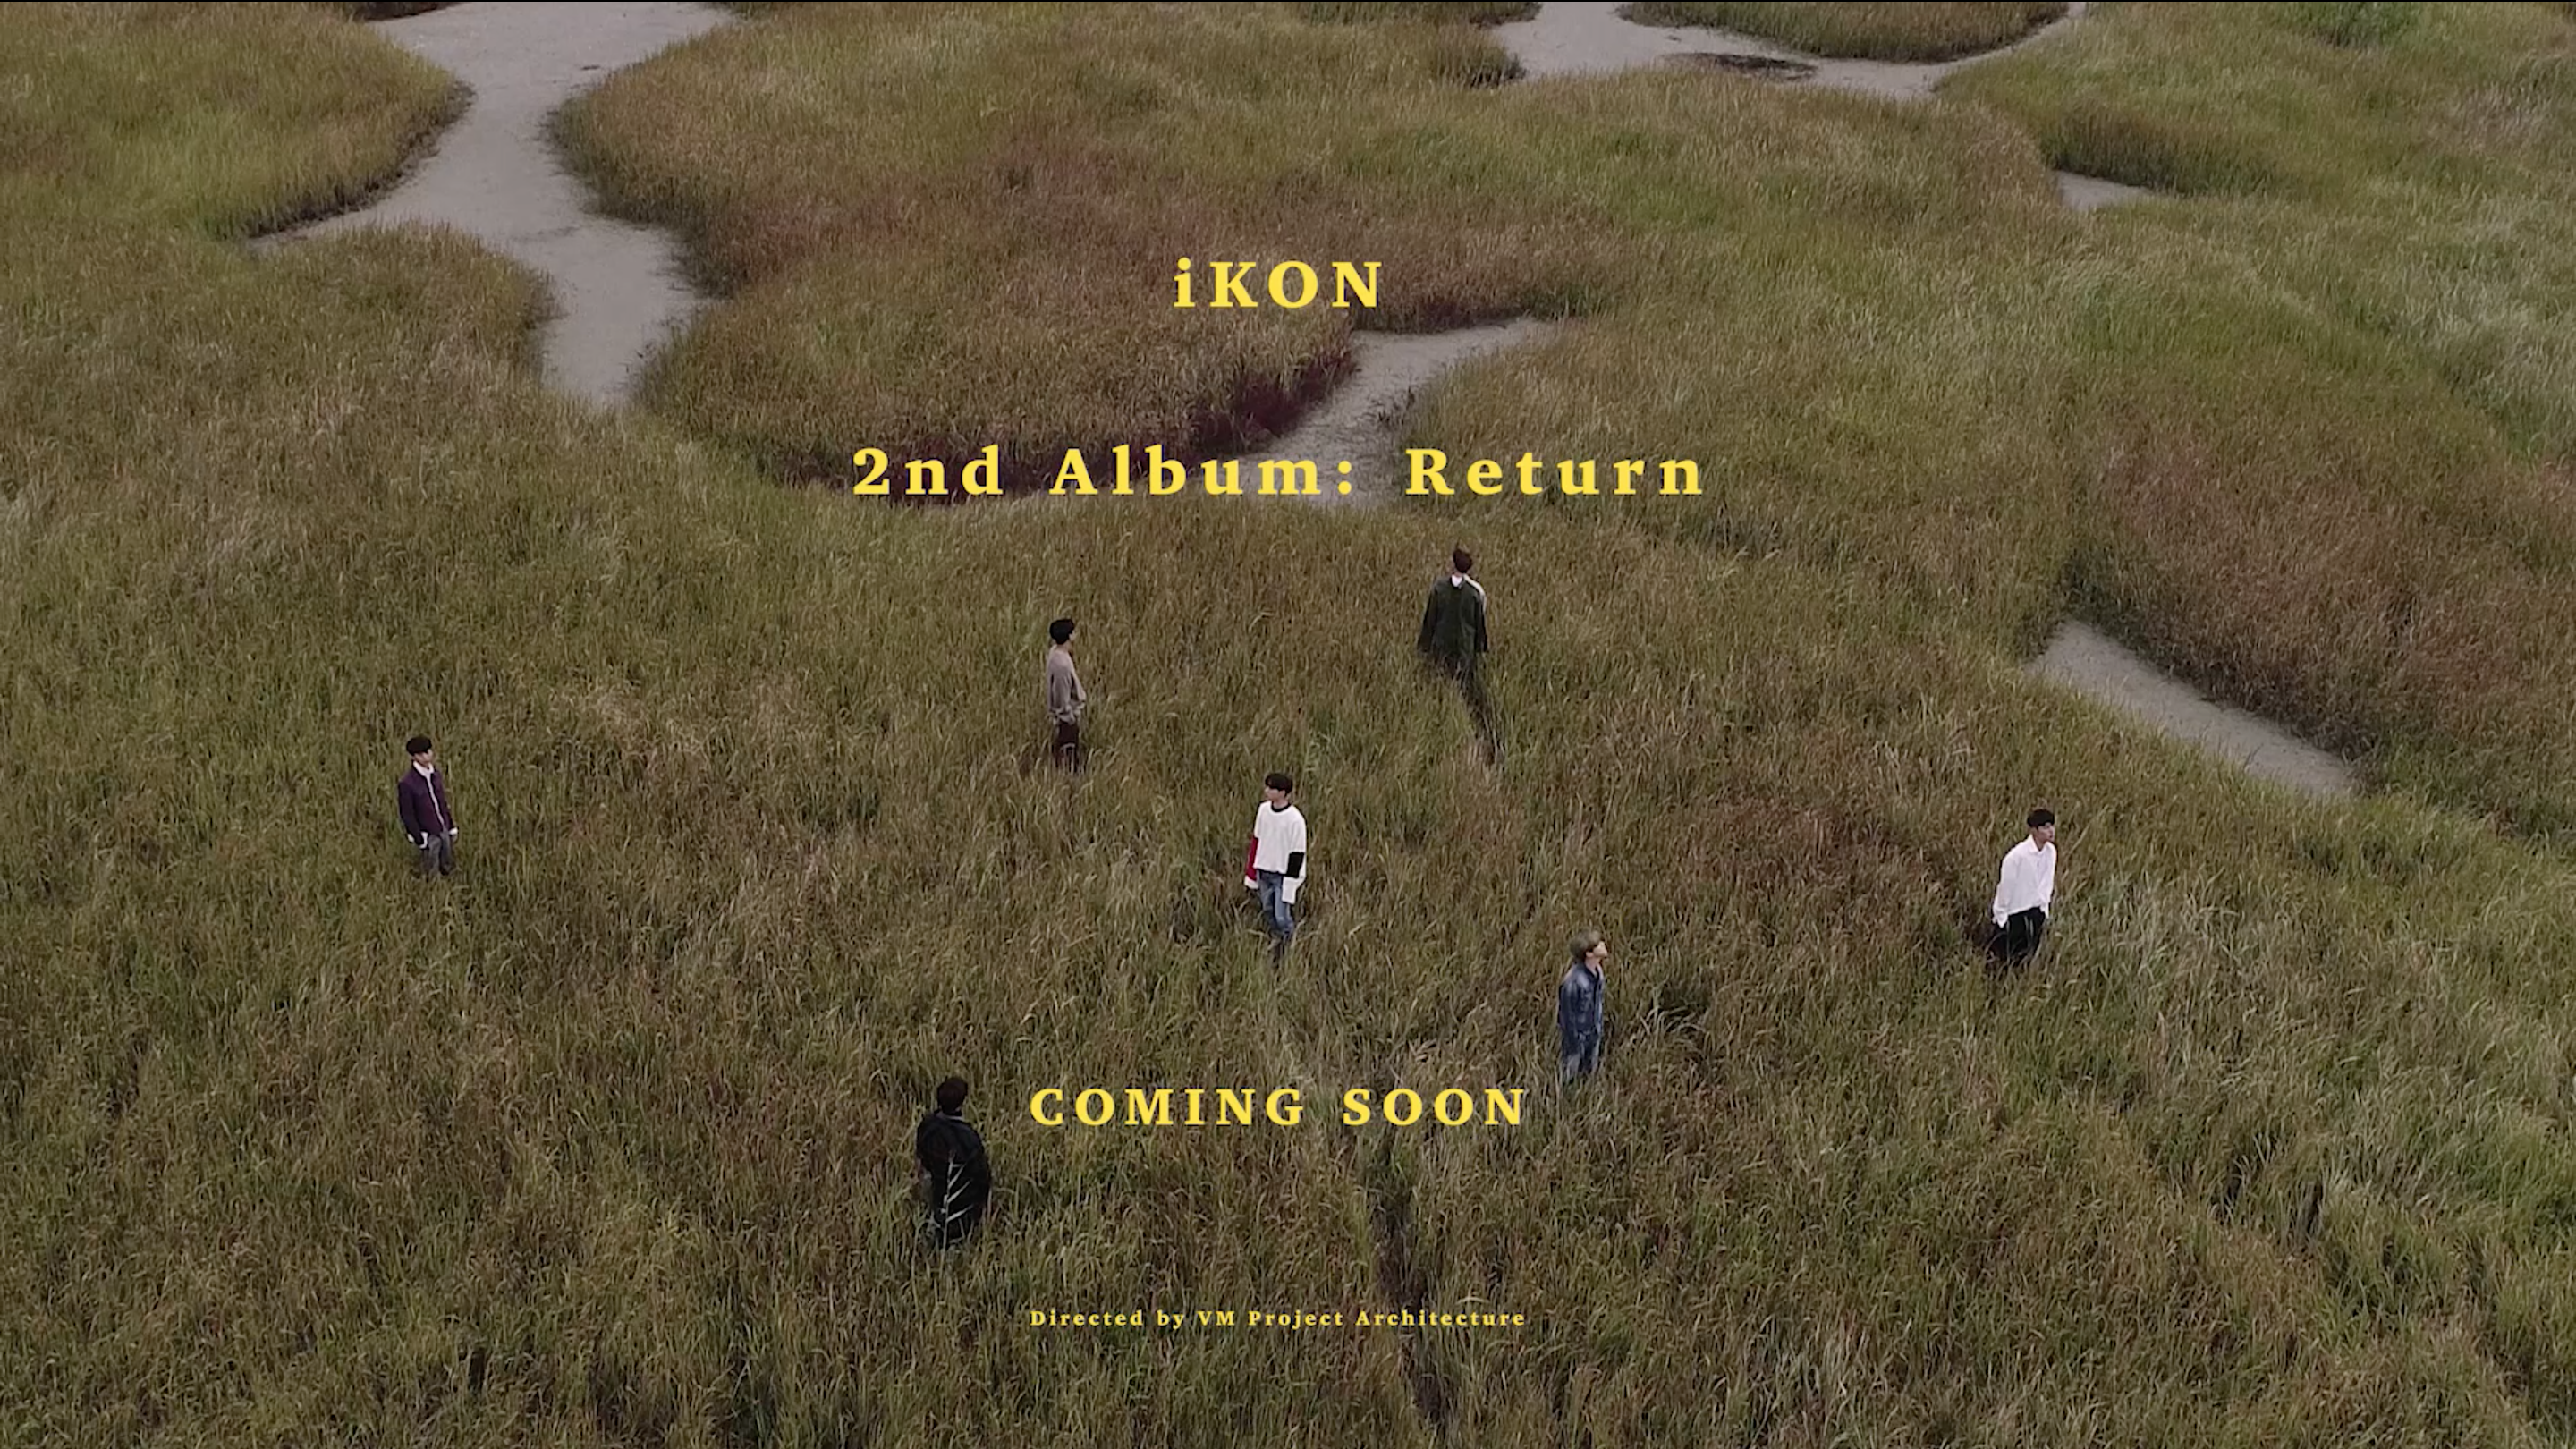 iKON - 2nd ALBUM 'RETURN' TEASER FILM